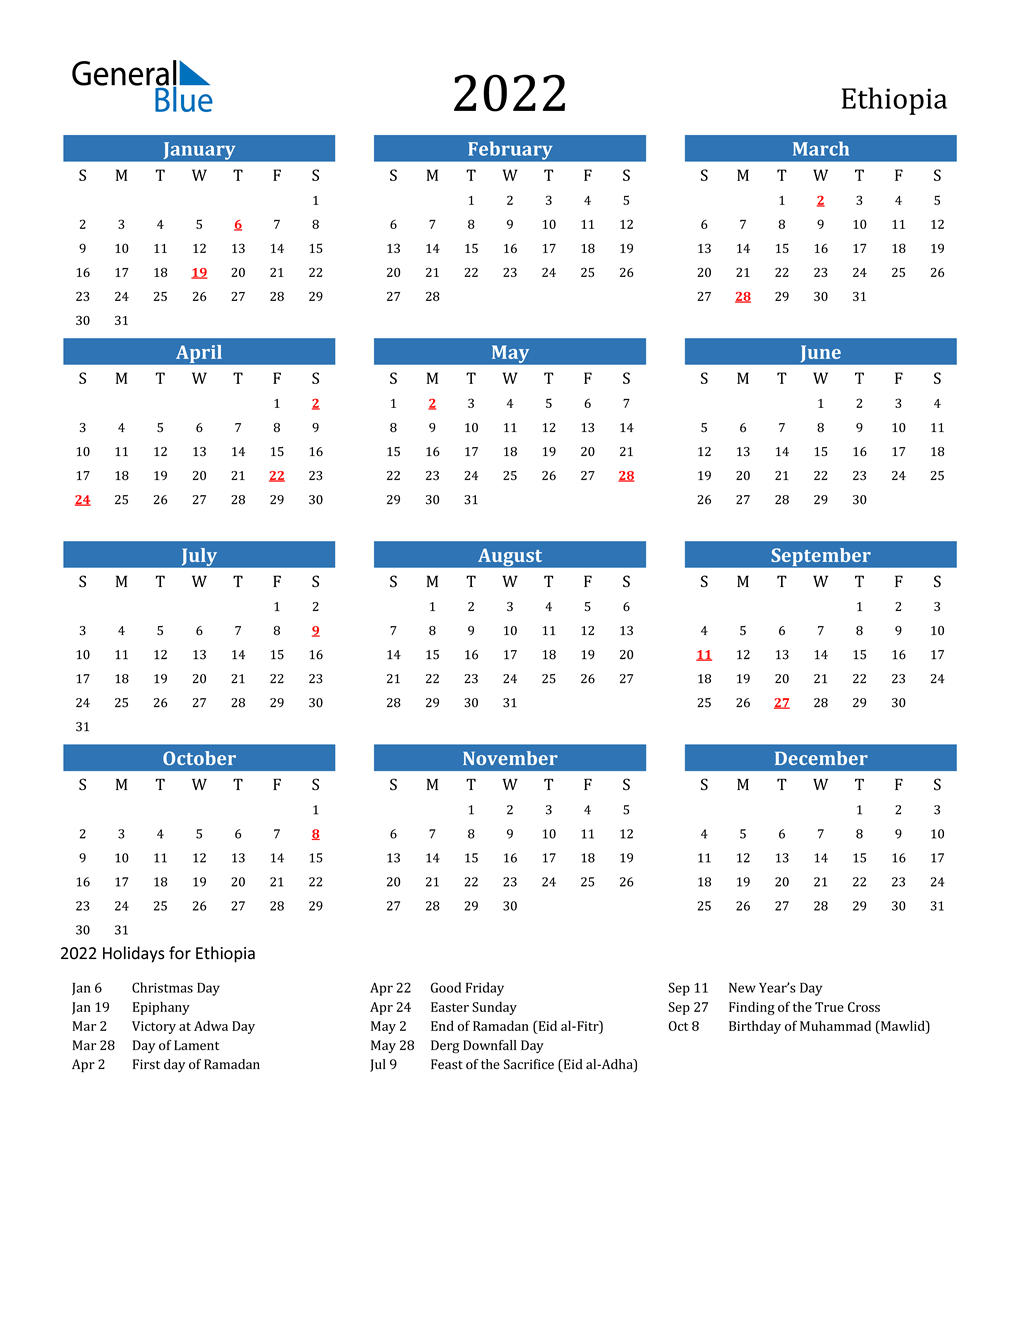 Ethiopian Orthodox Fasting Calendar 2022 2022 Ethiopia Calendar With Holidays